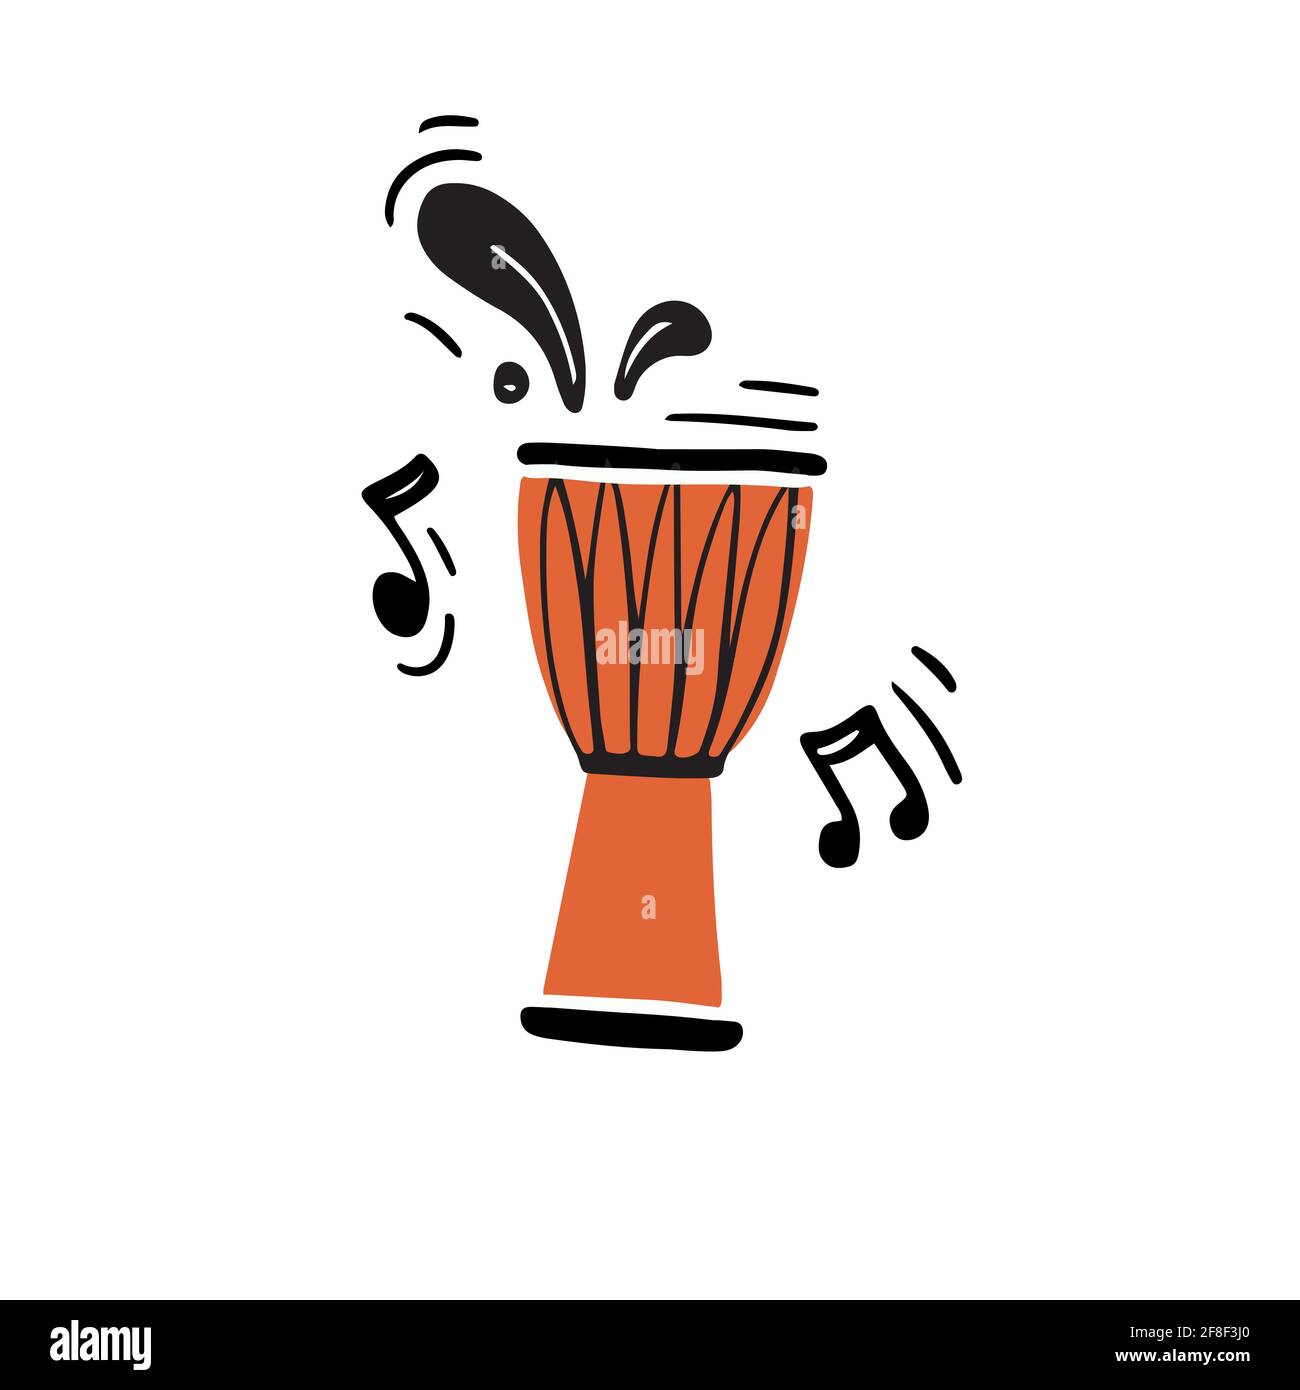 Illustration vectorielle créative d'un instrument de percussion traditionnel appelé djembe drum avec des notes abstraites noires dessinées à la main dans un style minimaliste lecture de musique authentique pendant le concert Illustration de Vecteur